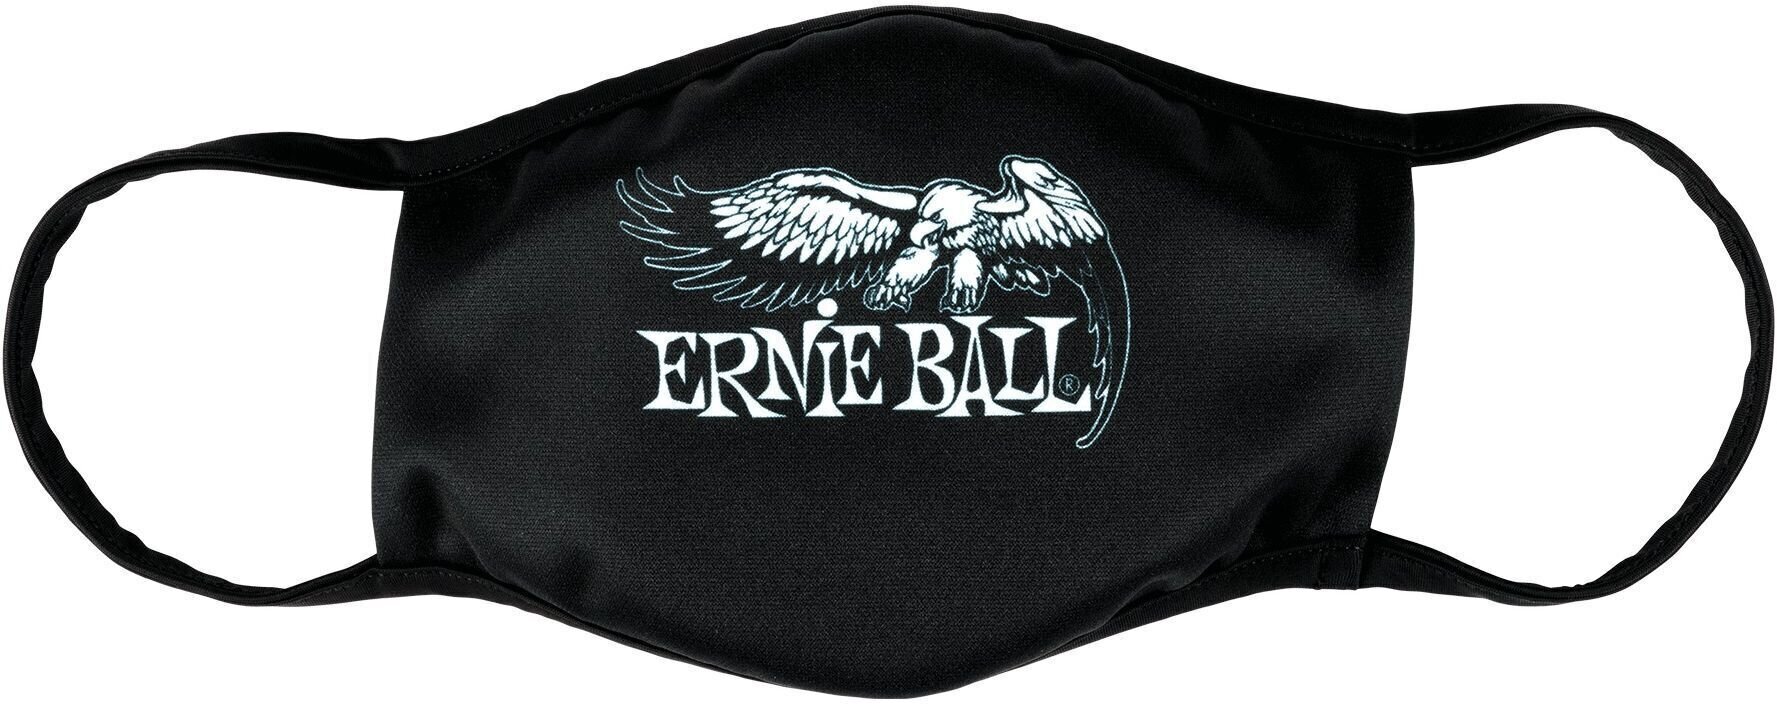 Máscara facial Ernie Ball 4908 Máscara facial